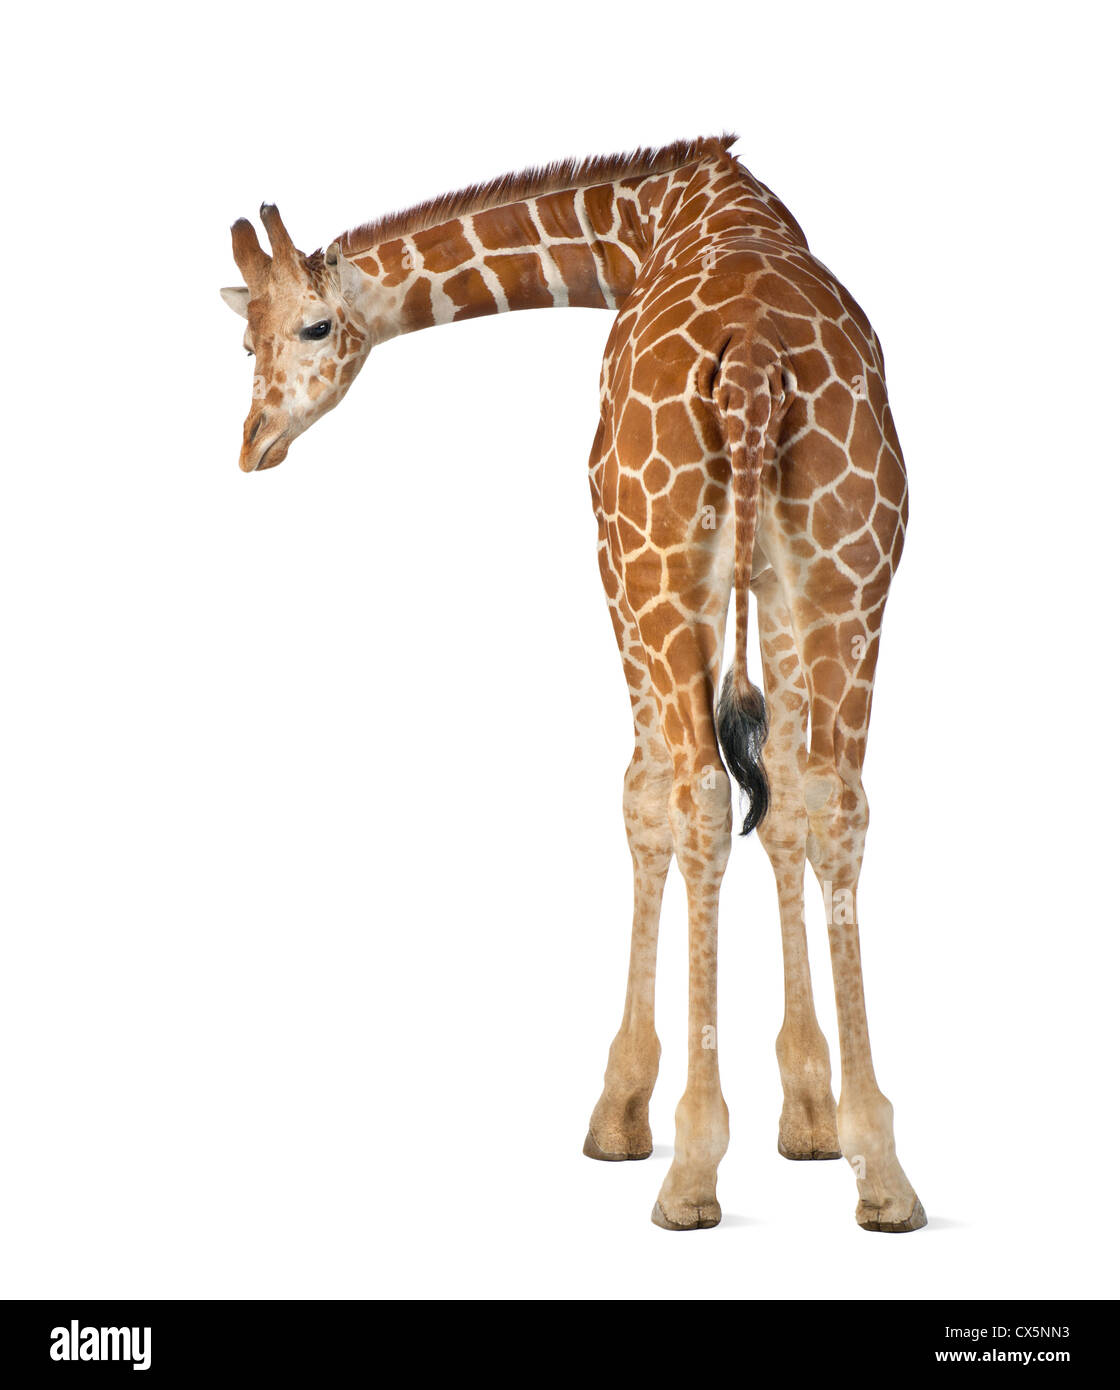 Los somalíes a menudo conocido como la Jirafa reticulada jirafa (Giraffa camelopardalis reticulata) 2 años y medio sobre fondo blanco. Foto de stock